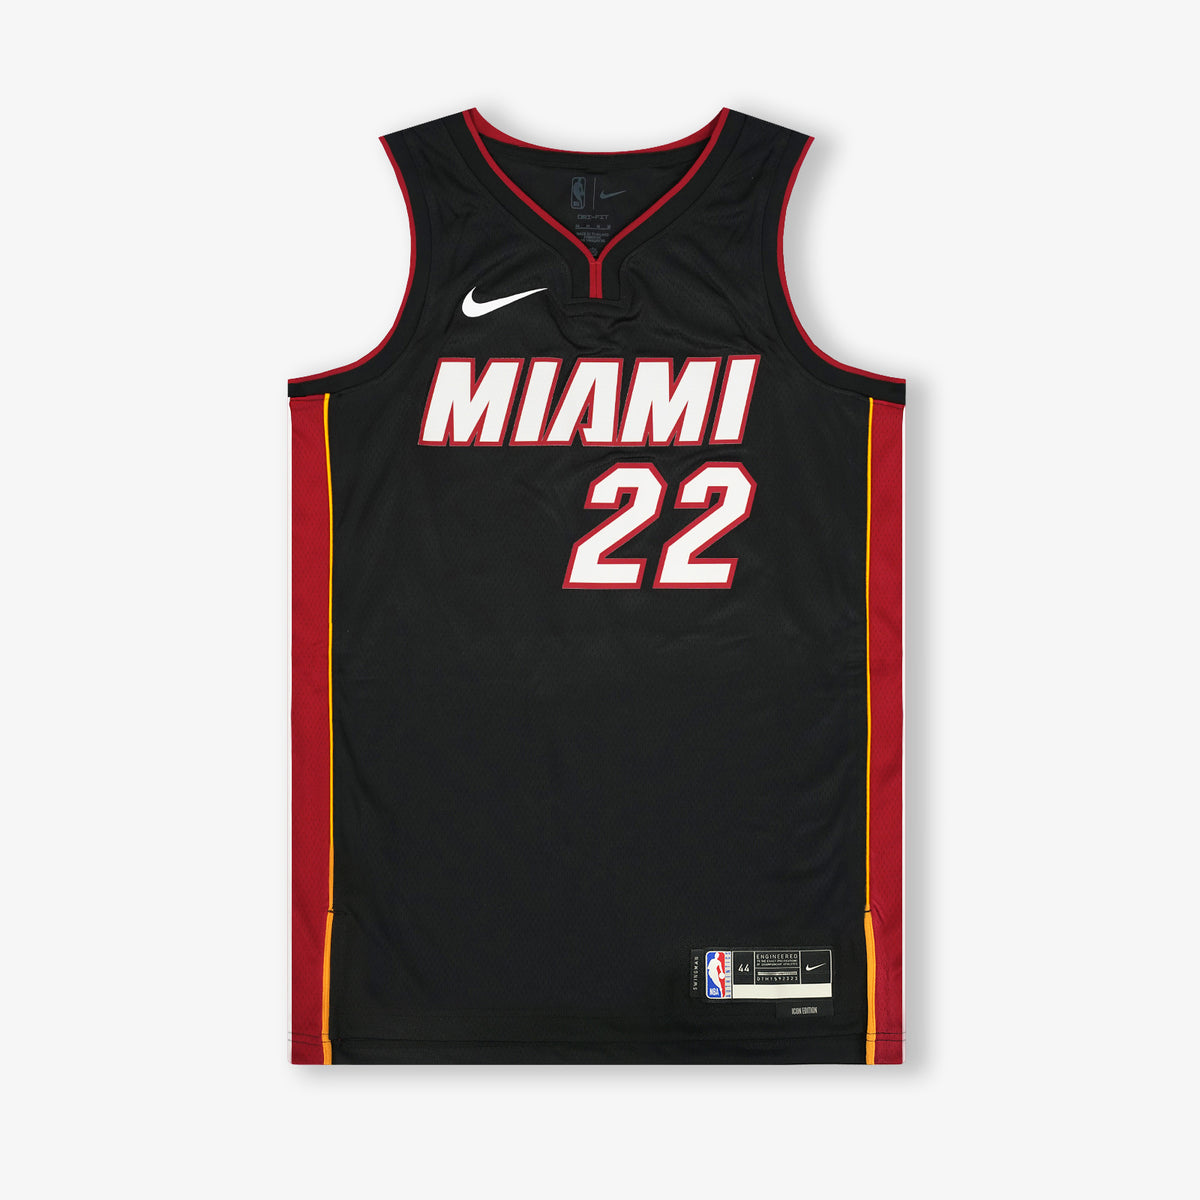 Jimmy Butler - Miami Heat - Game-Worn - Statement Edition Jersey